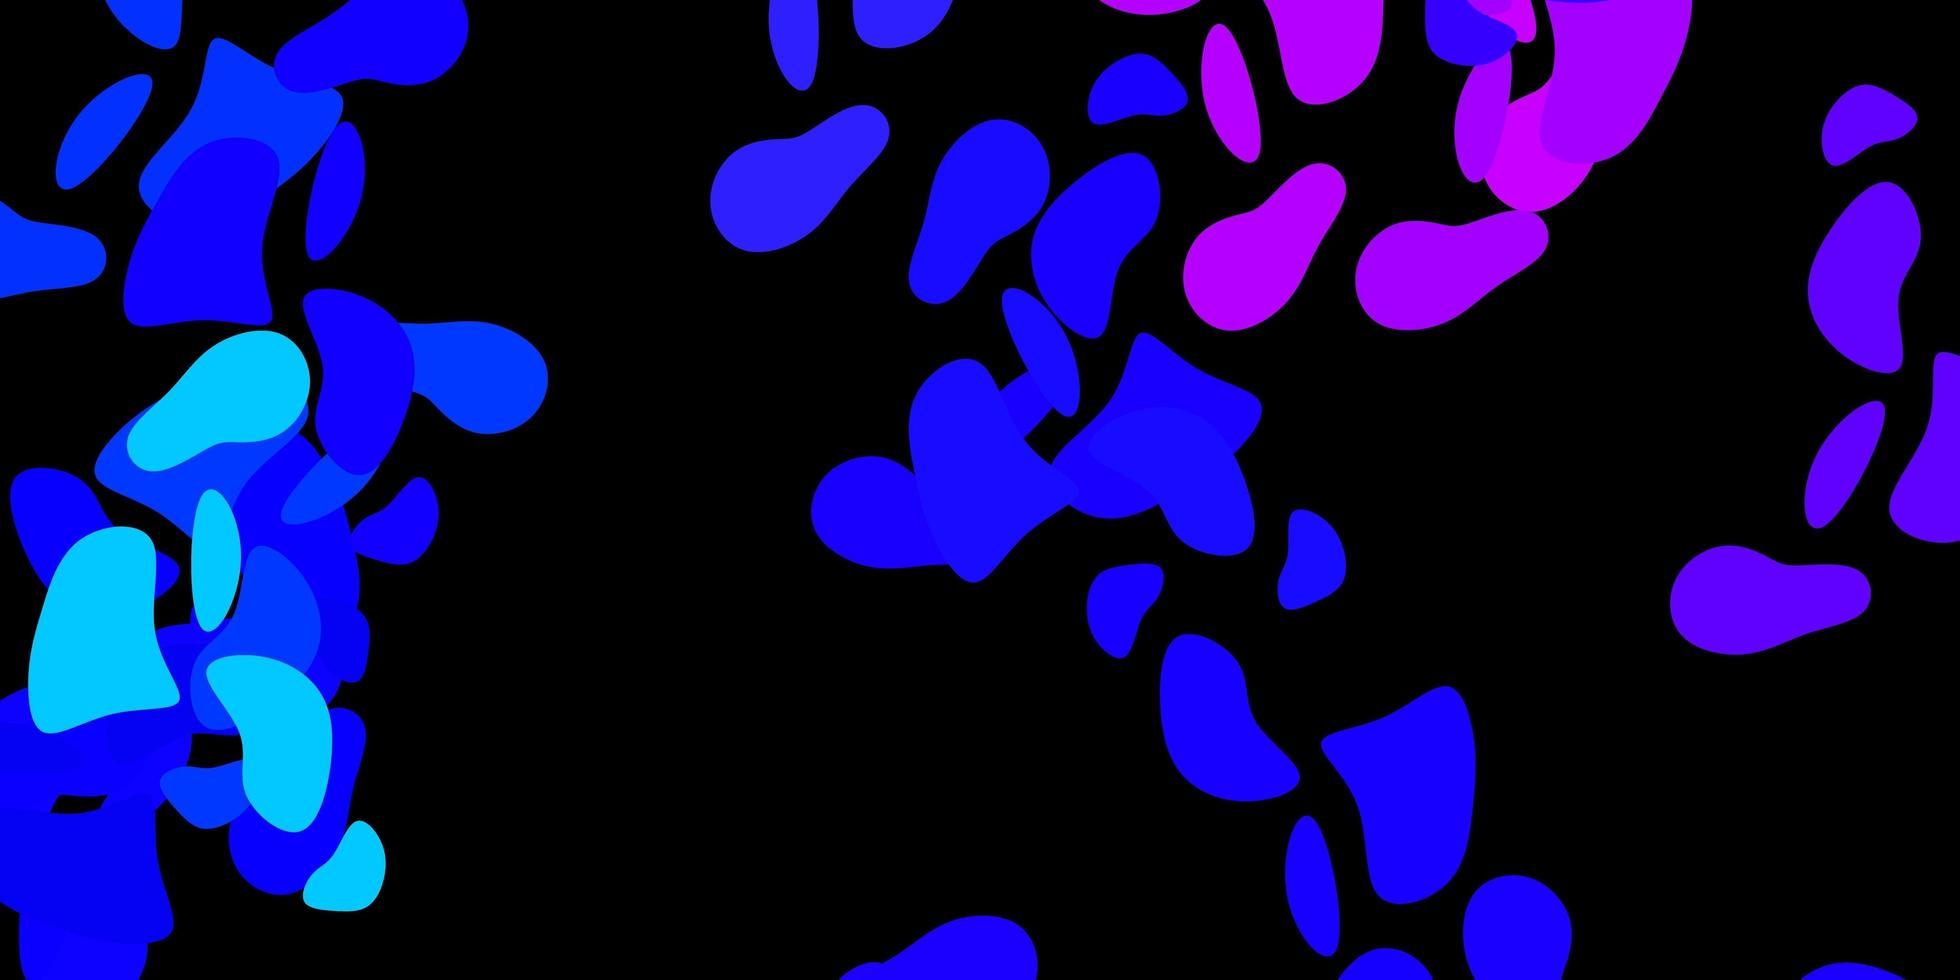 trama vettoriale rosa scuro, blu con forme di memphis.